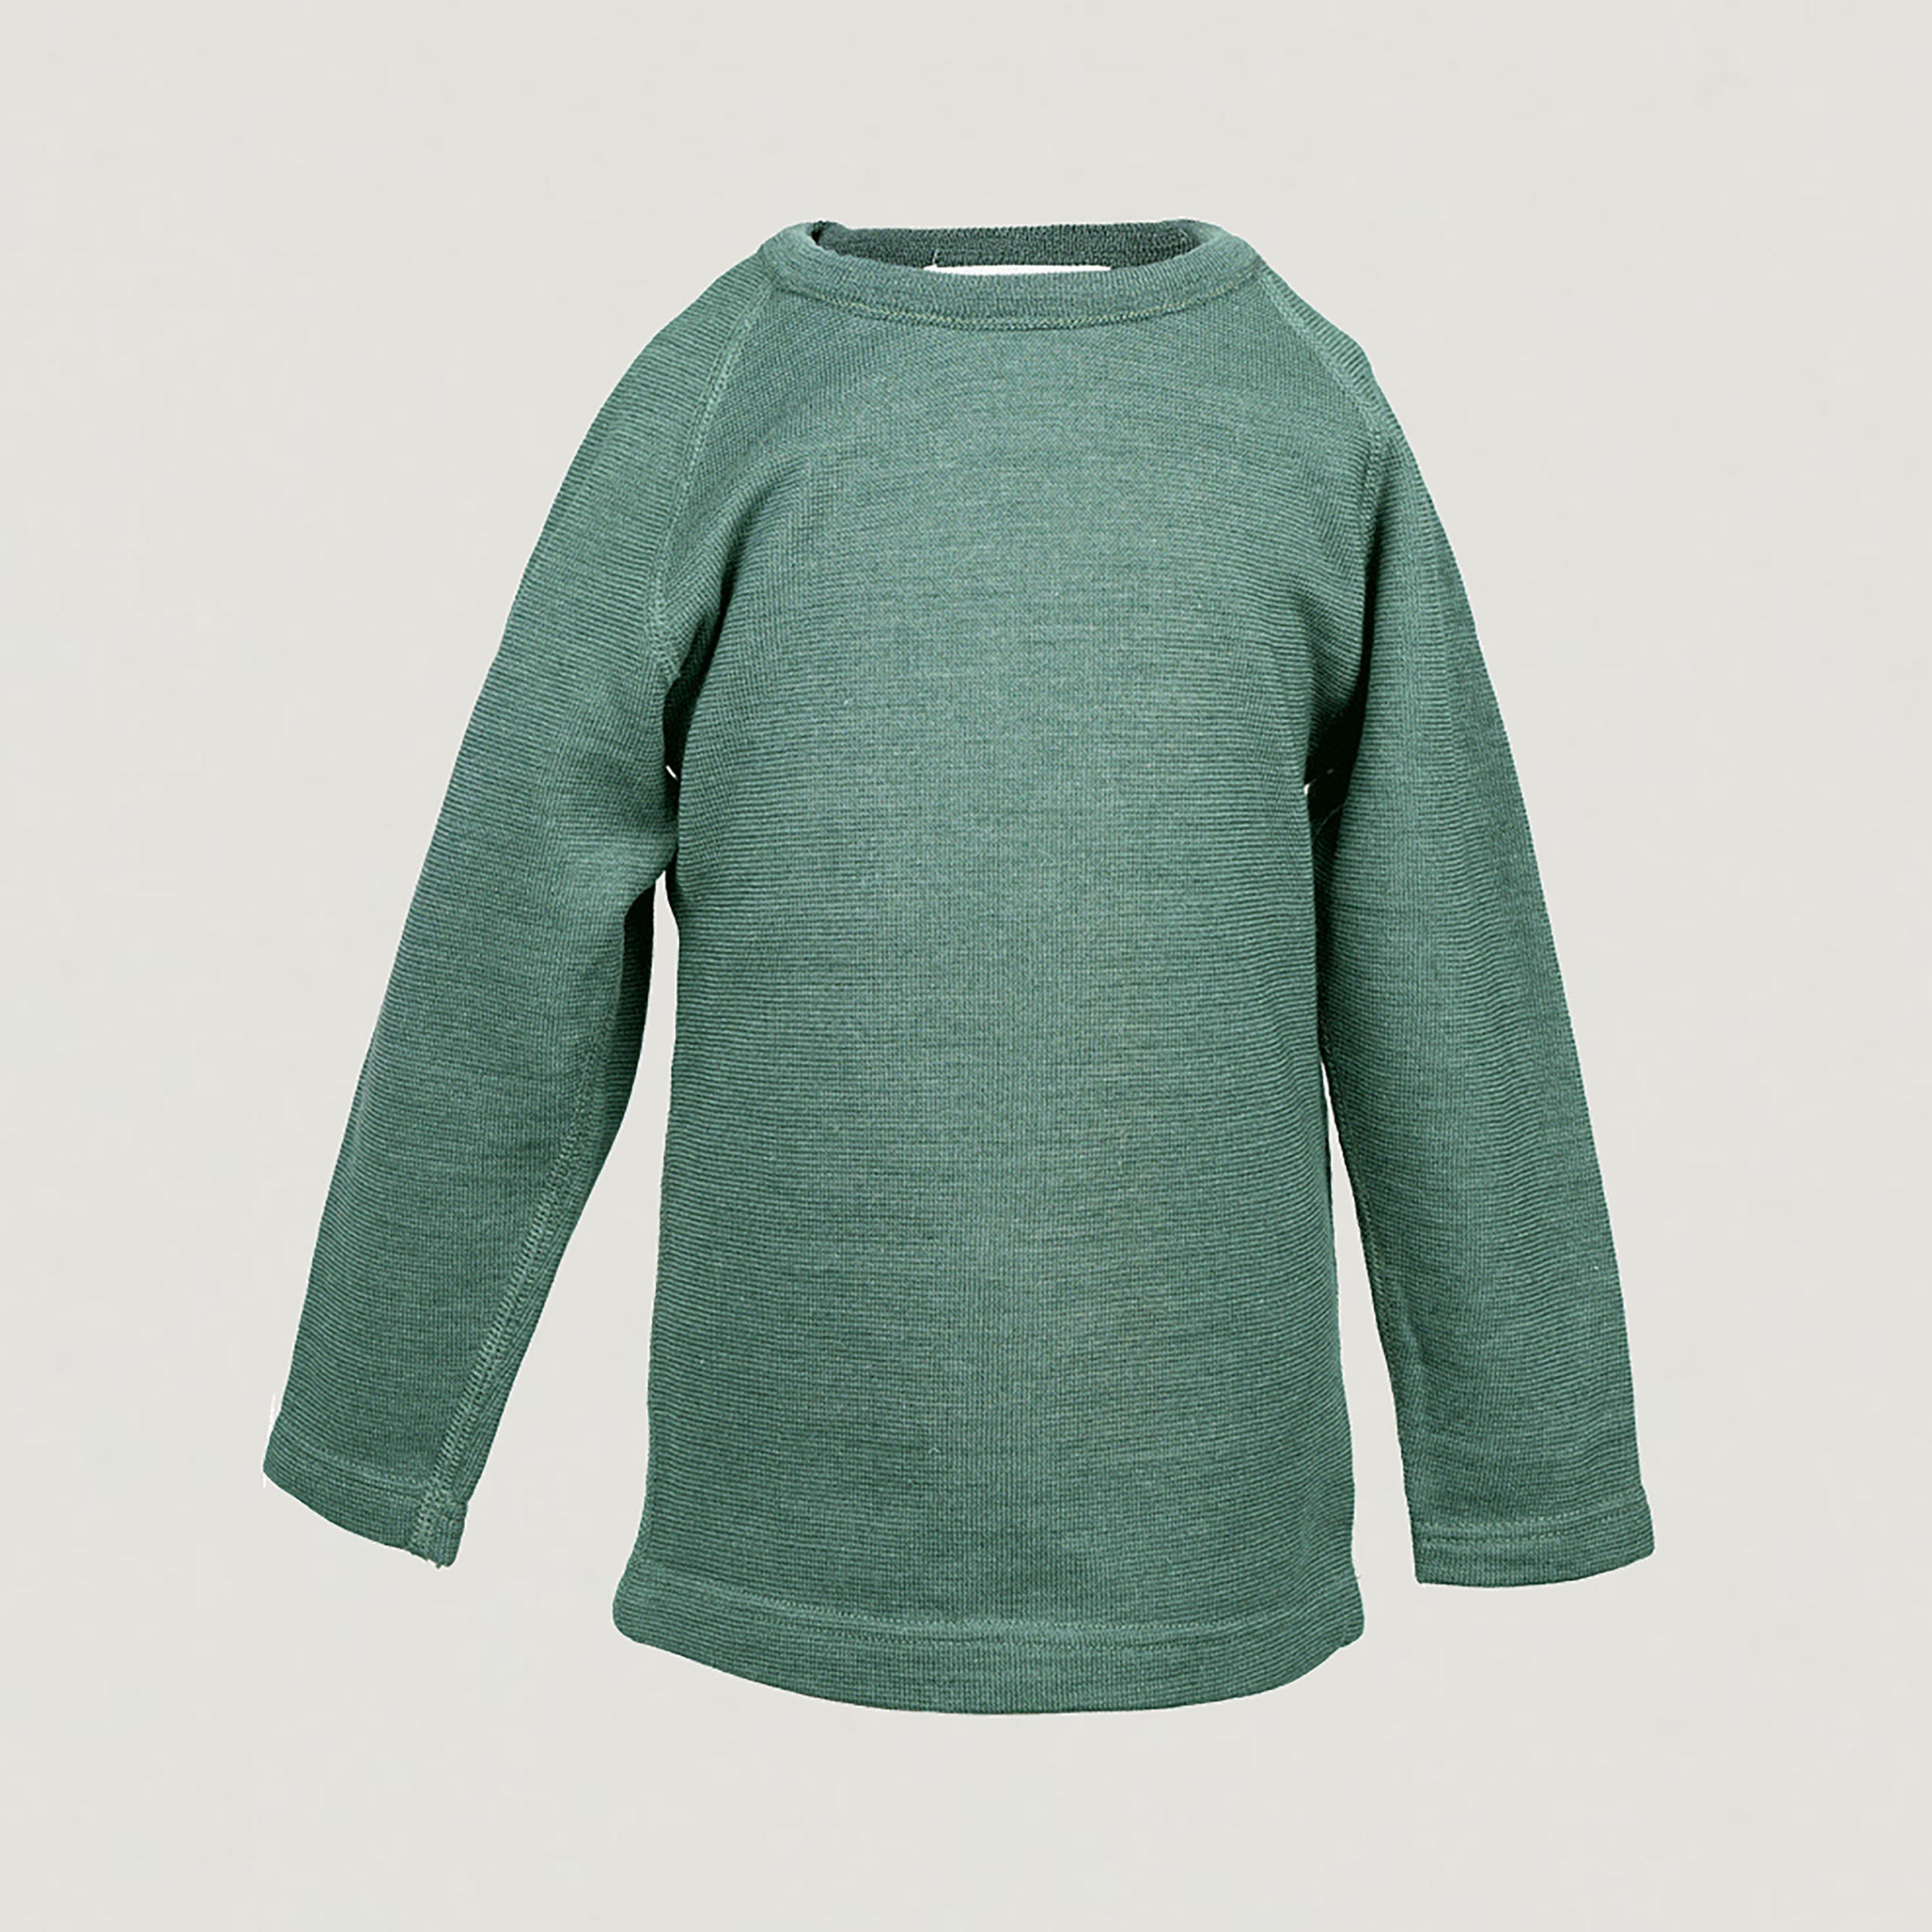 Produktfoto vom langarm Shirt aus Wolle & Seide von Reiff in der Farbe Salbei.